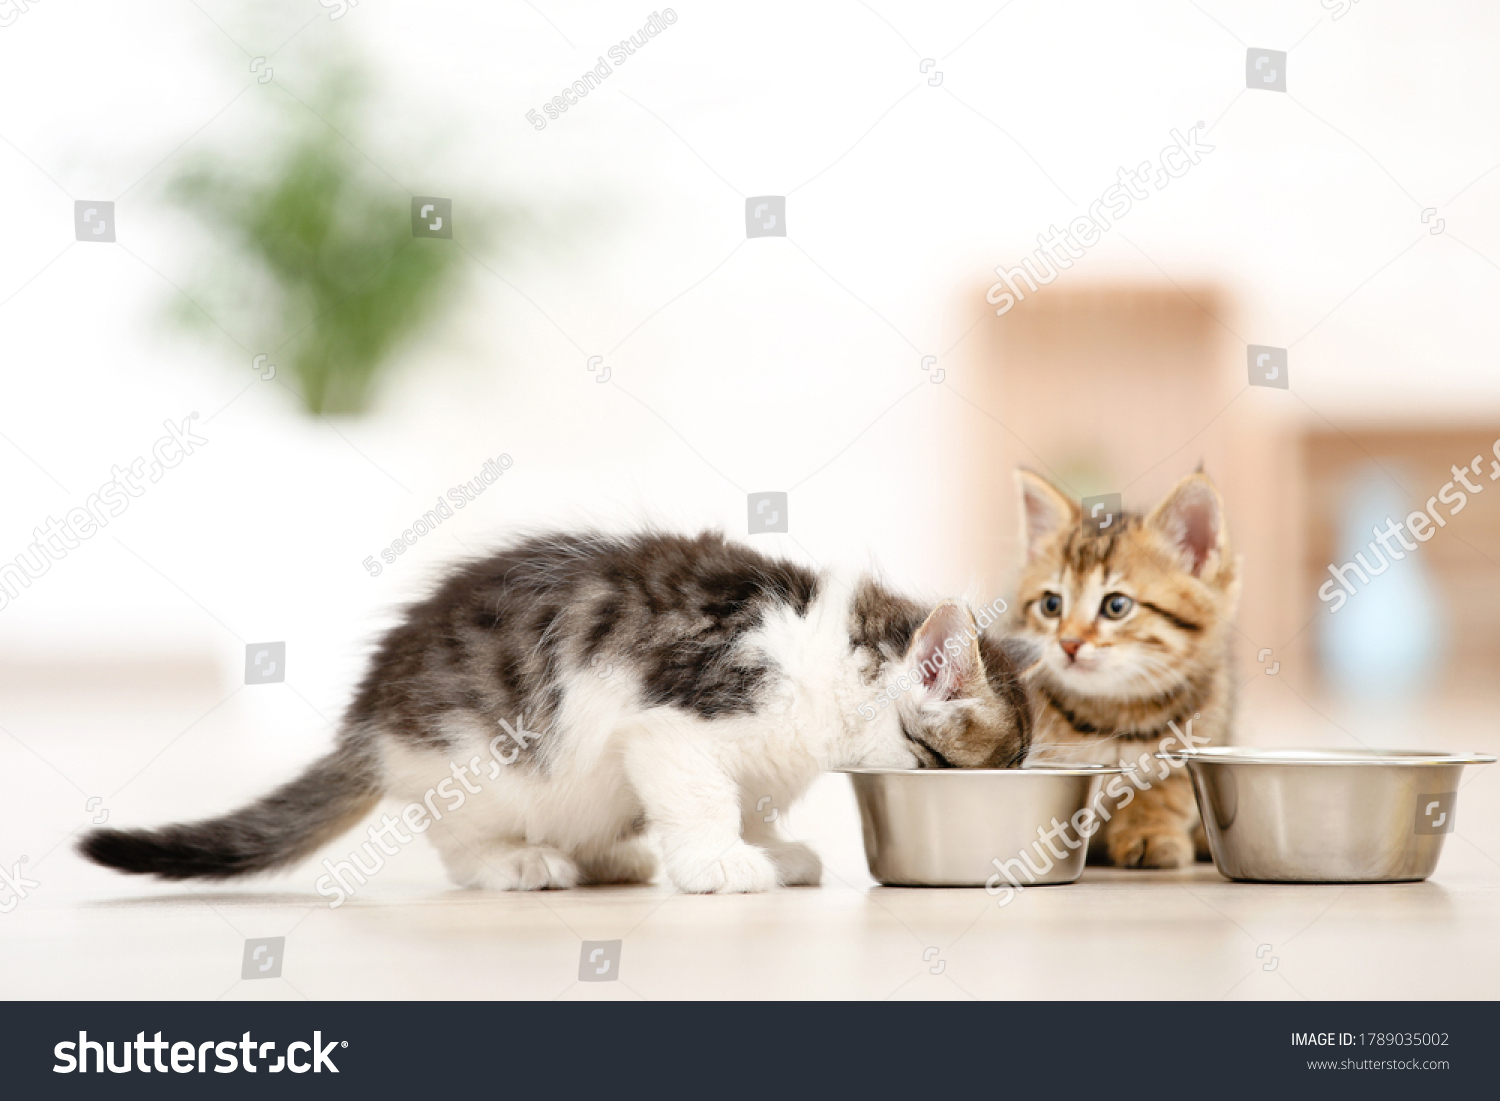 Kittens eating from feeding bowl on the floor #1789035002